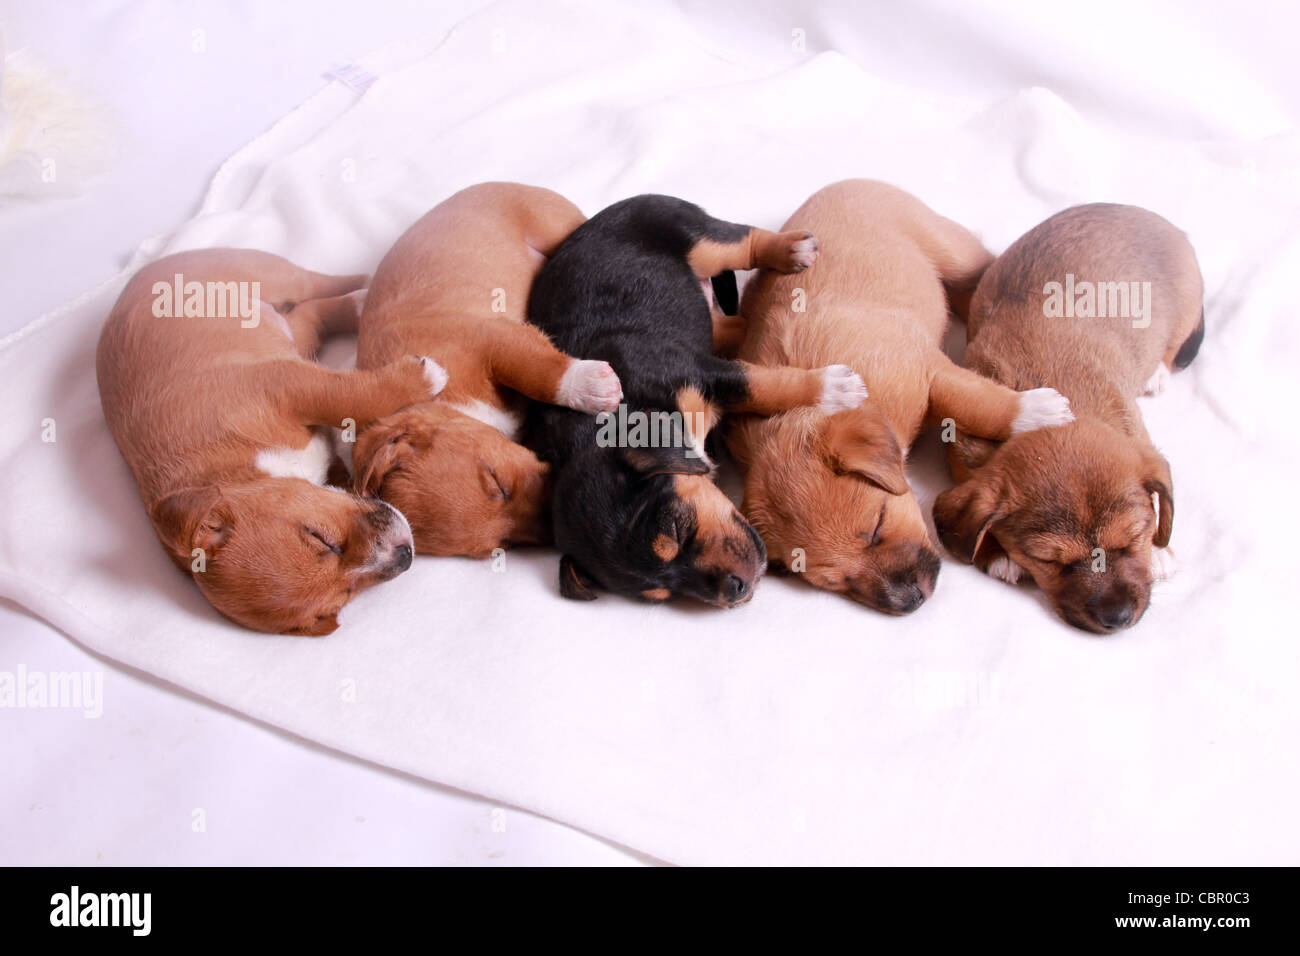 5 week old puppies sleeping Stock Photo